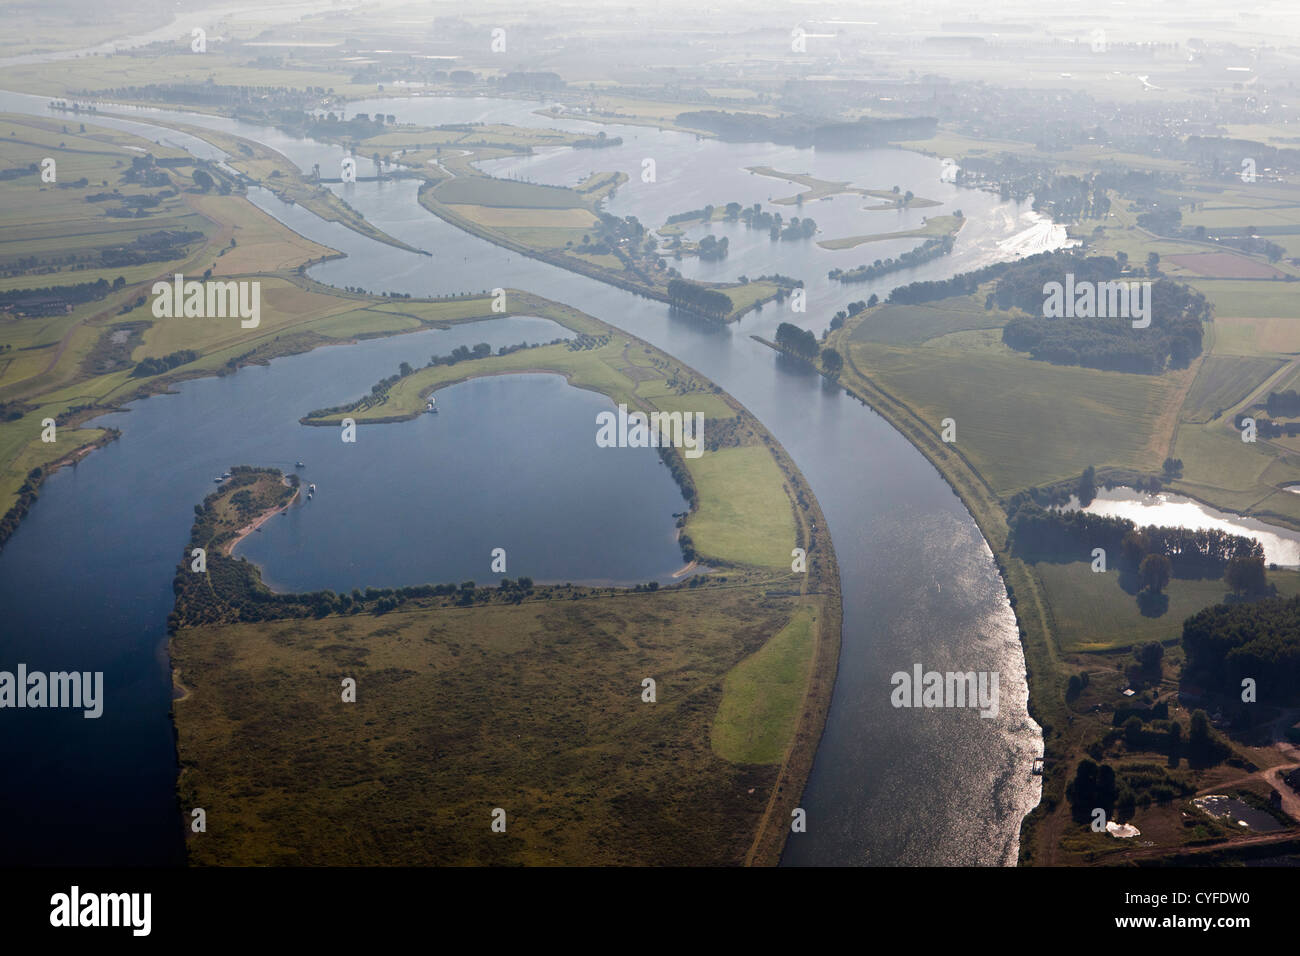 Die Niederlande, Maurik, Yachthafen, Hochwasserschutz Damm im Fluss Lek, auch genannt: Neder-Rijn. Luftbild Stockfoto